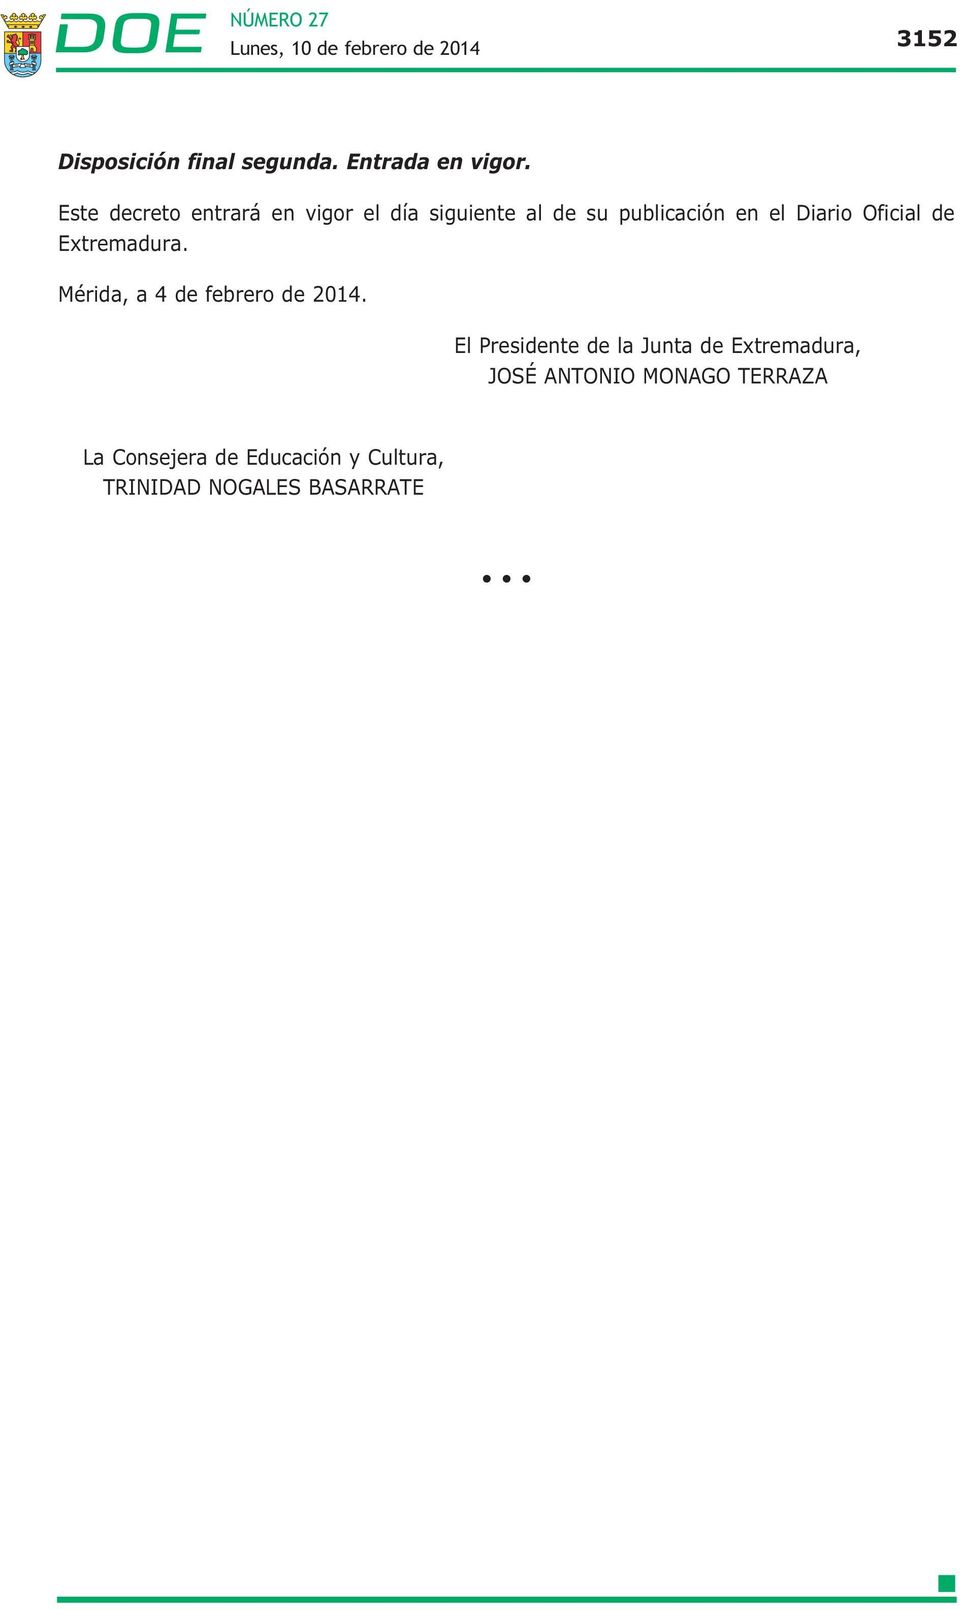 Diario Oficial de Extremadura. Mérida, a 4 de febrero de 2014.